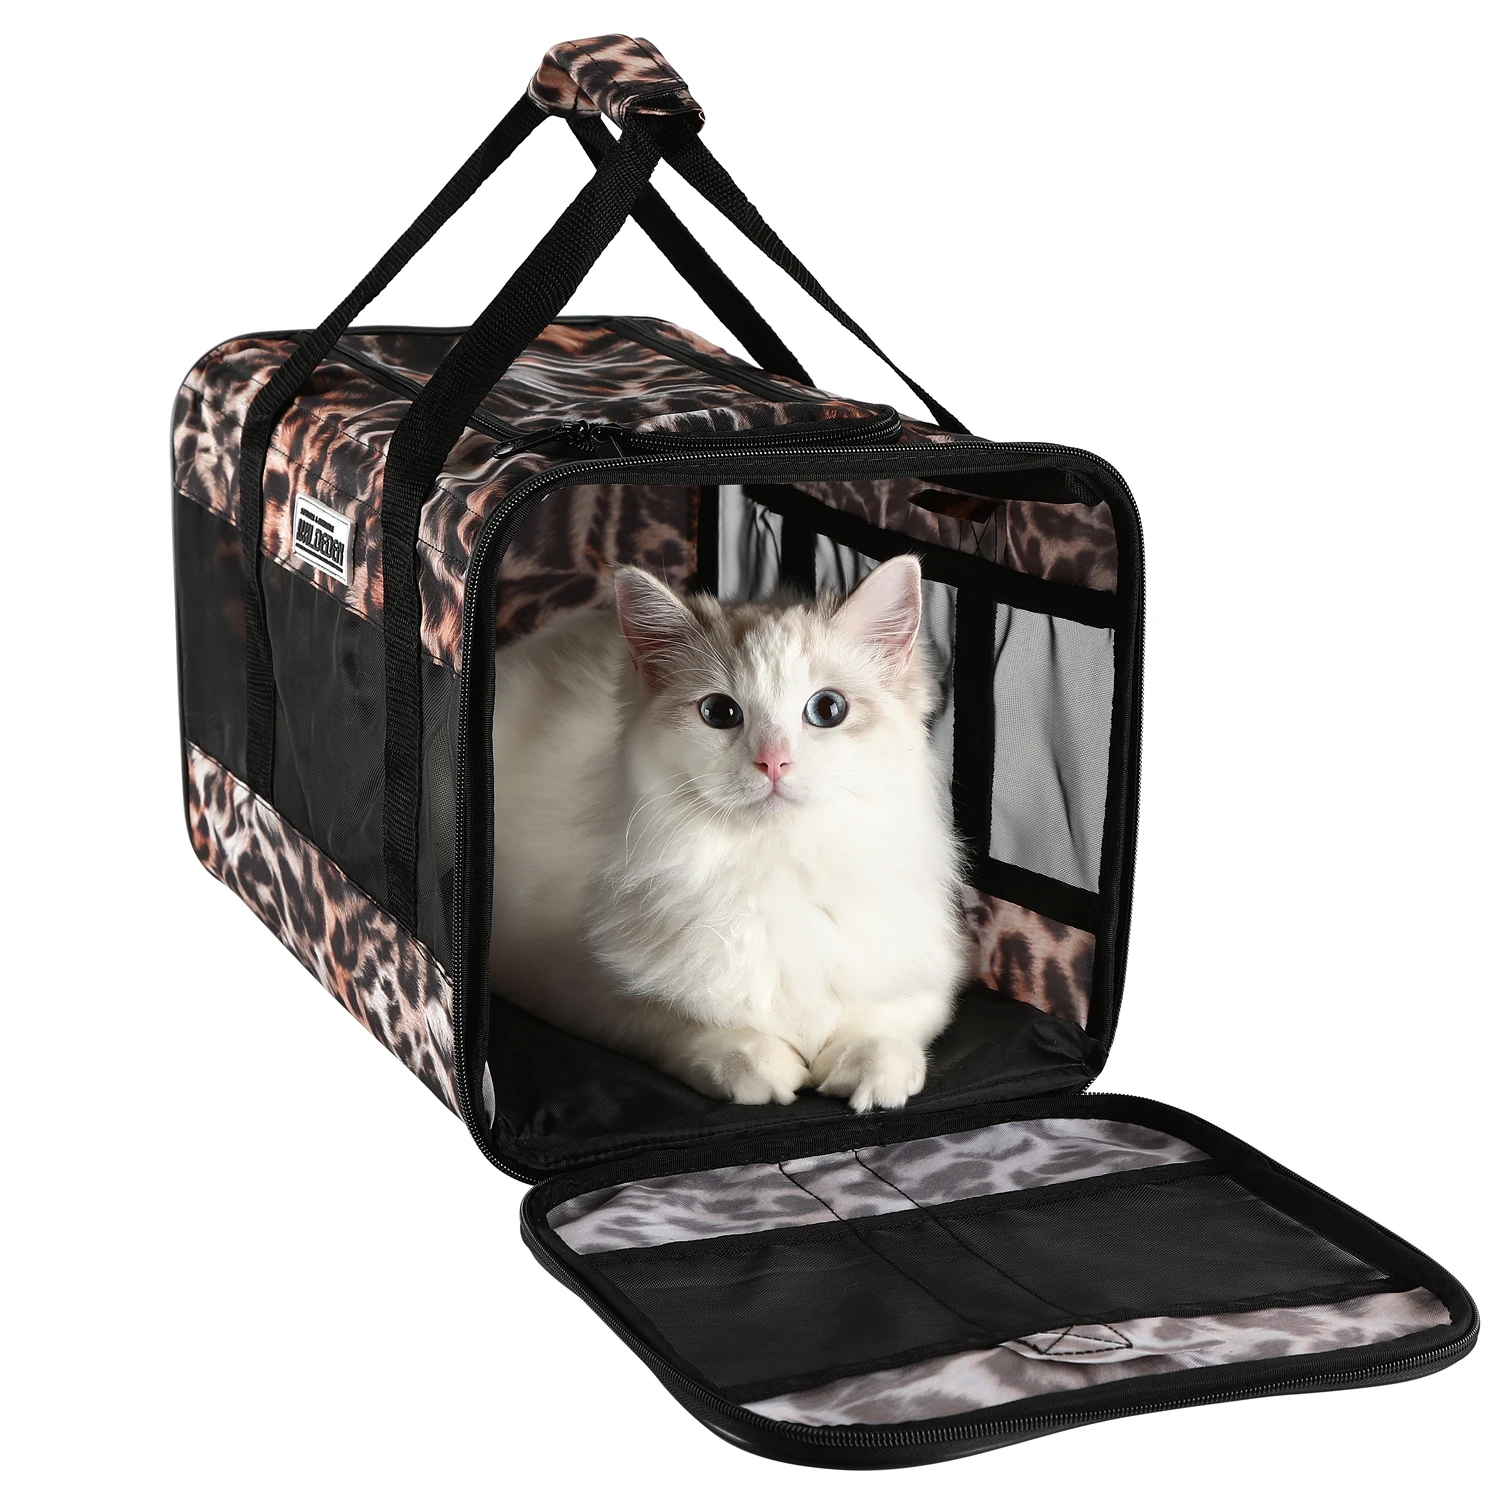 

EDENPETZ Portable Pet Dog Cat Carrier Bag Breathable Handbag Mesh Puppy Rabbit Shoulder Bags Airline Approved Transport Carrying